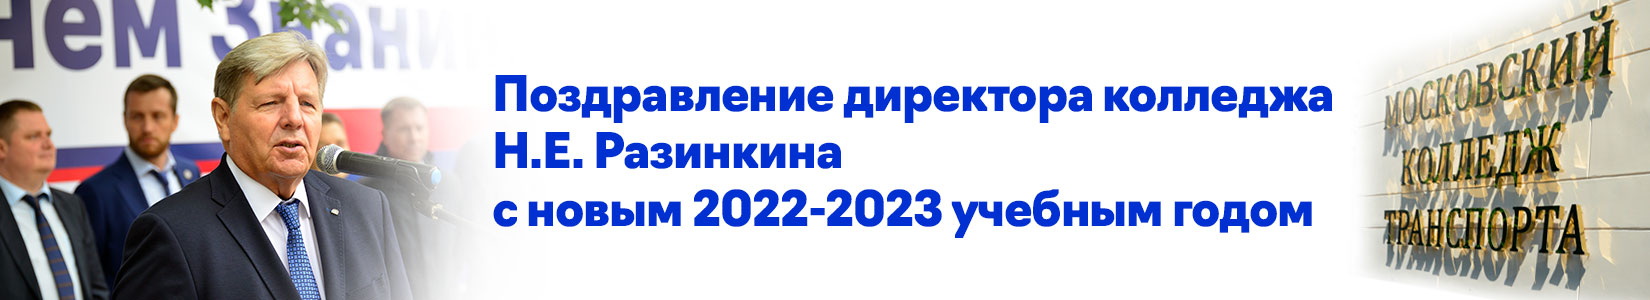 Поздравление директора колледжа Н.Е. Разинкина с новым 2022-2023 учебным годом